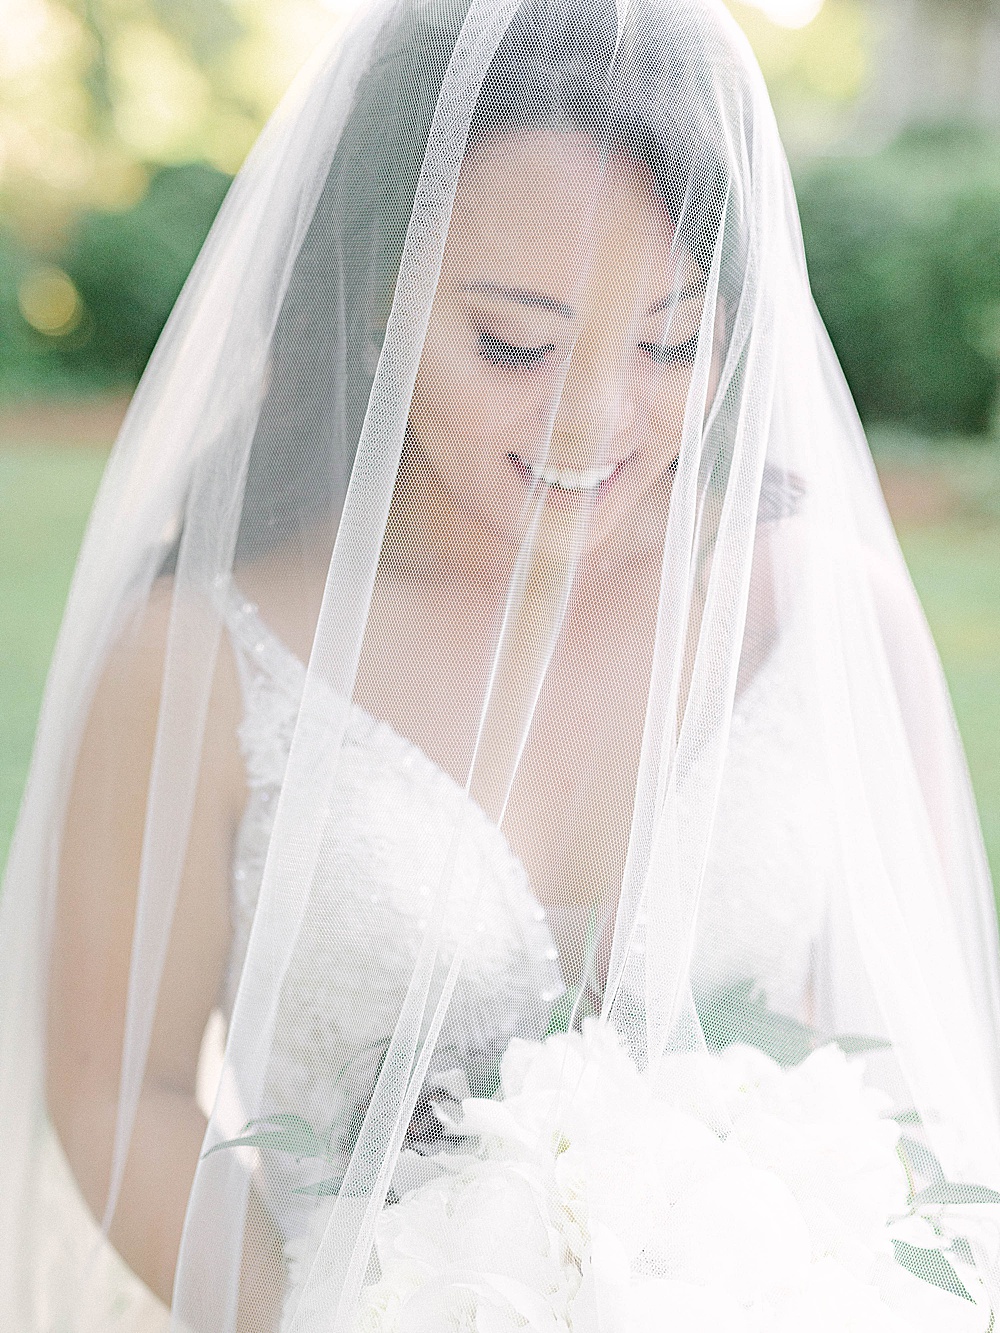 Bridal portrait with wedding veil